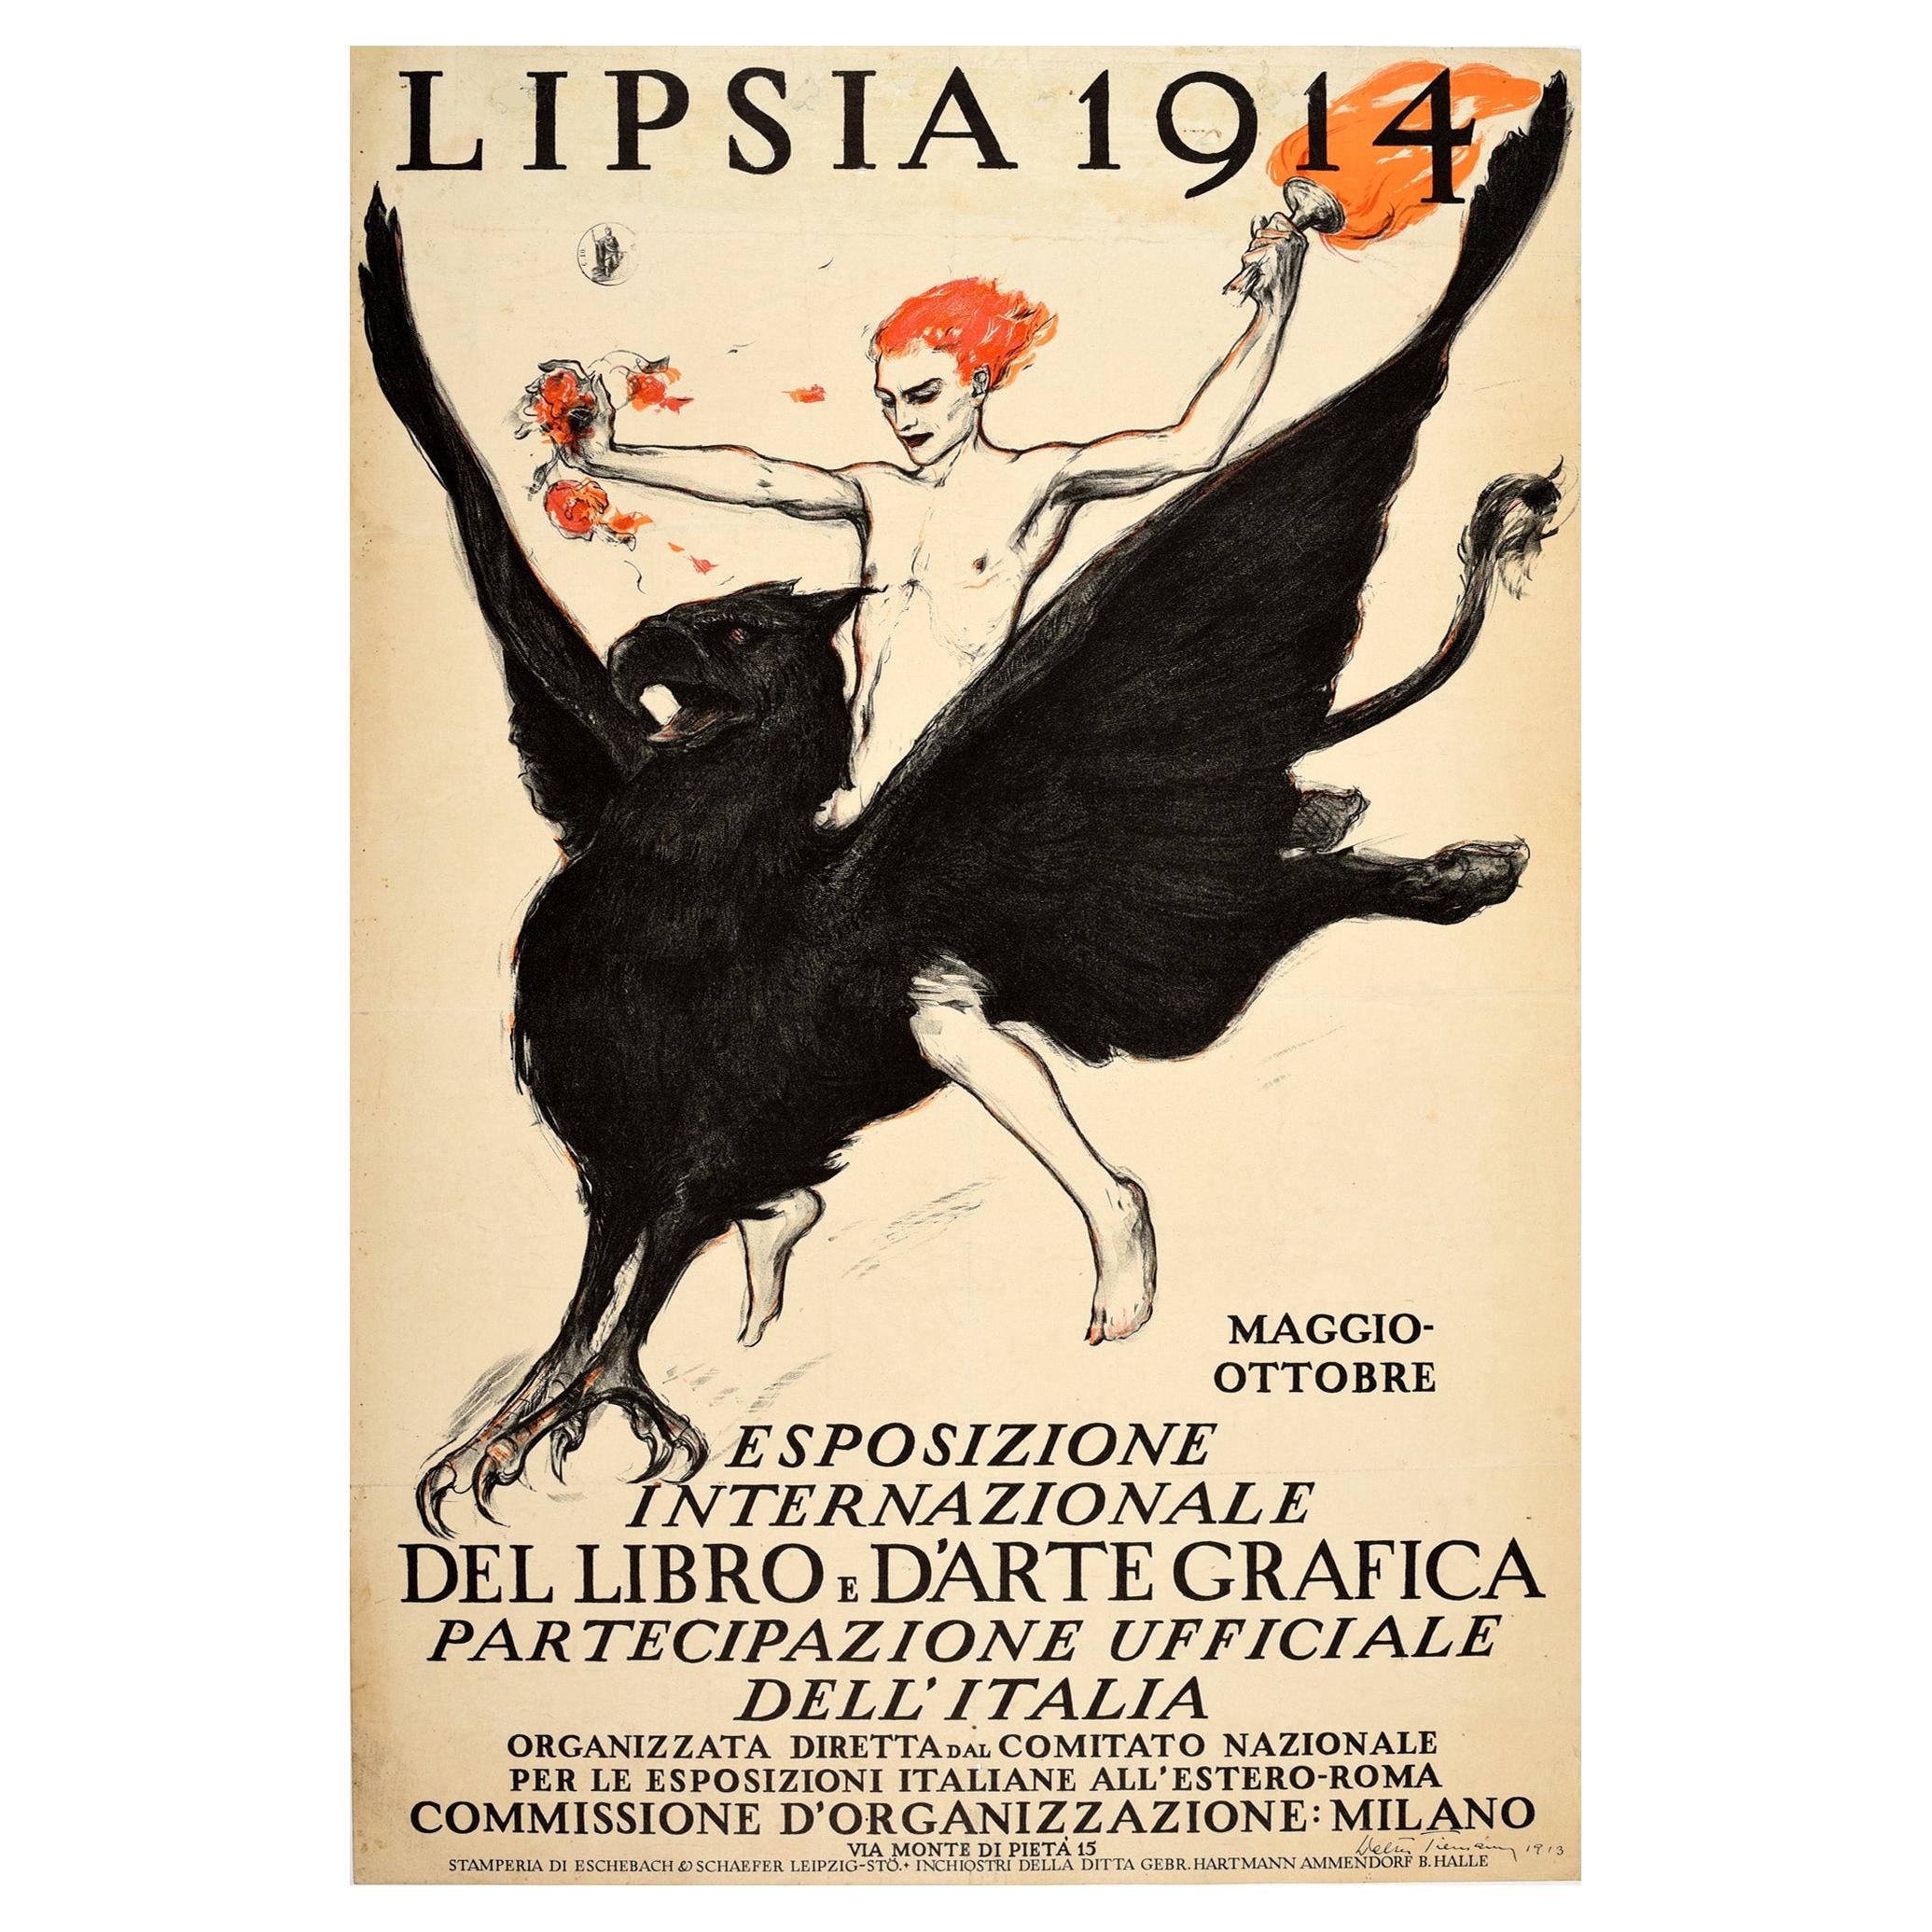 Original Antique Advertising Poster Lipsia Book & Graphic Art Exhibition Griffin